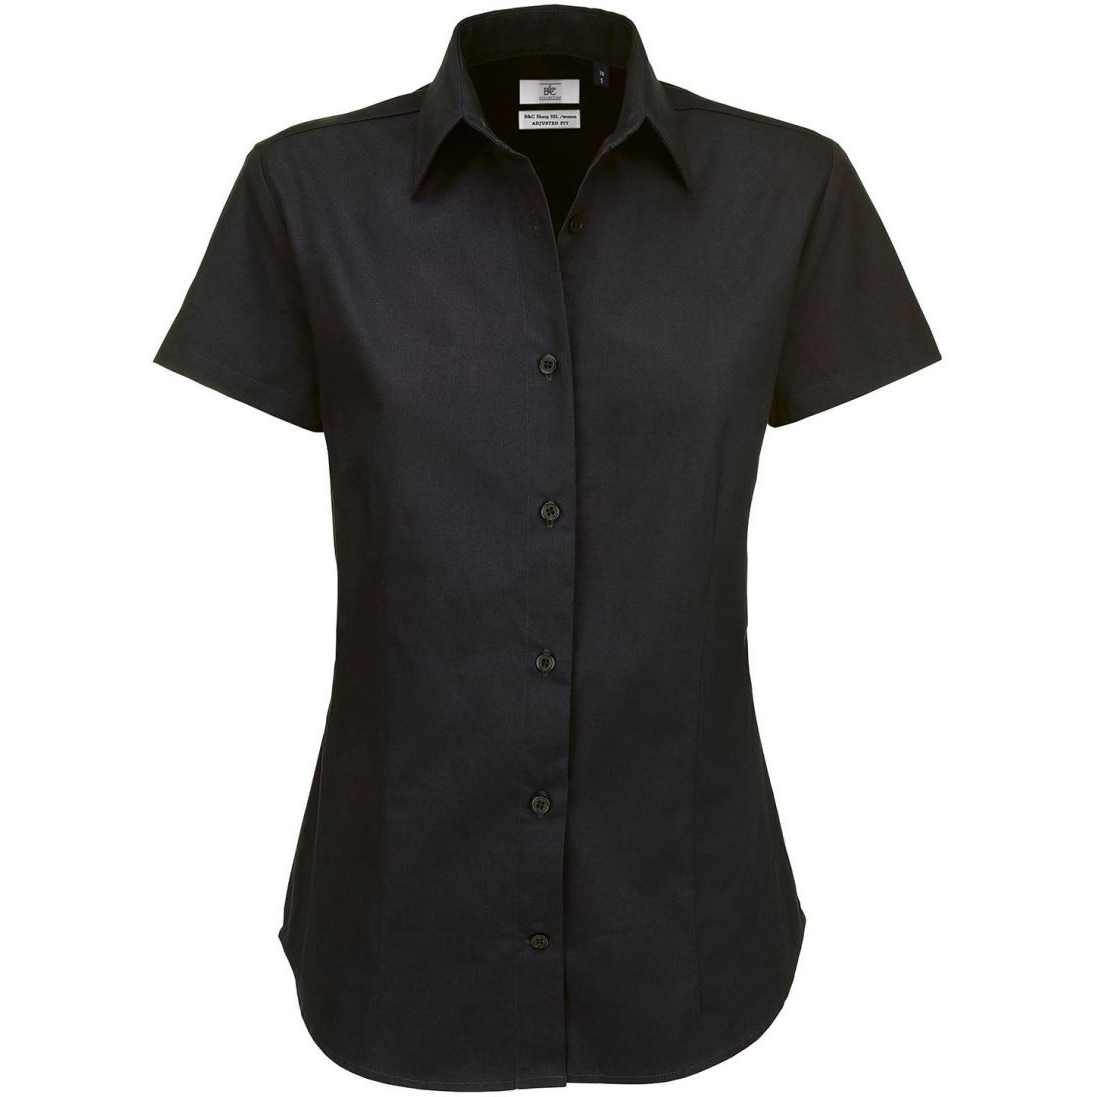 Dámská keprová košile B&C Sharp s krátkým rukávem - černá, XXL